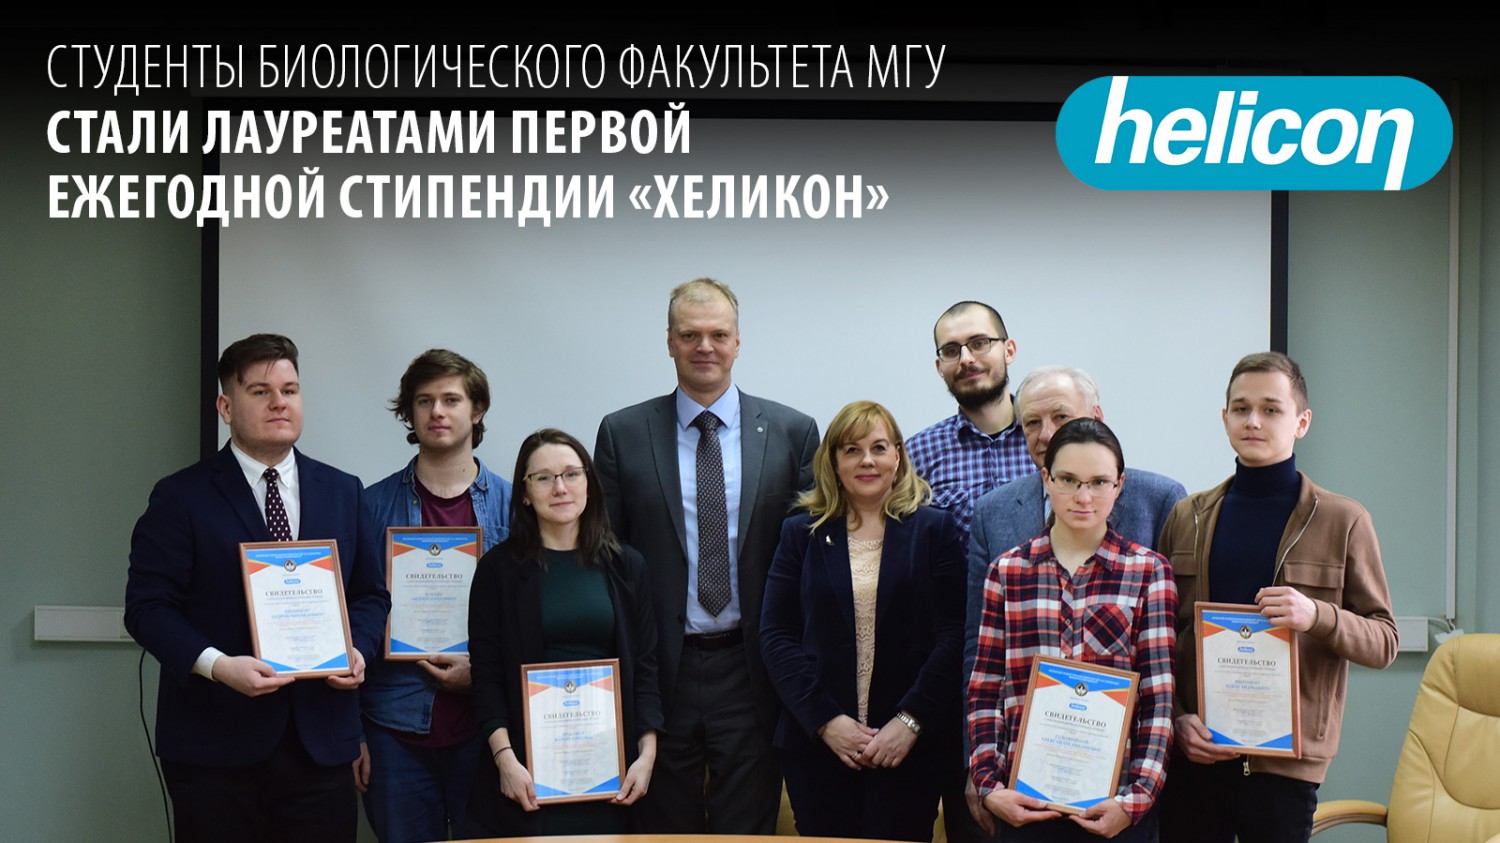 Студенты биологического факультета МГУ стали лауреатами первой ежегодной стипендии «Хеликон»